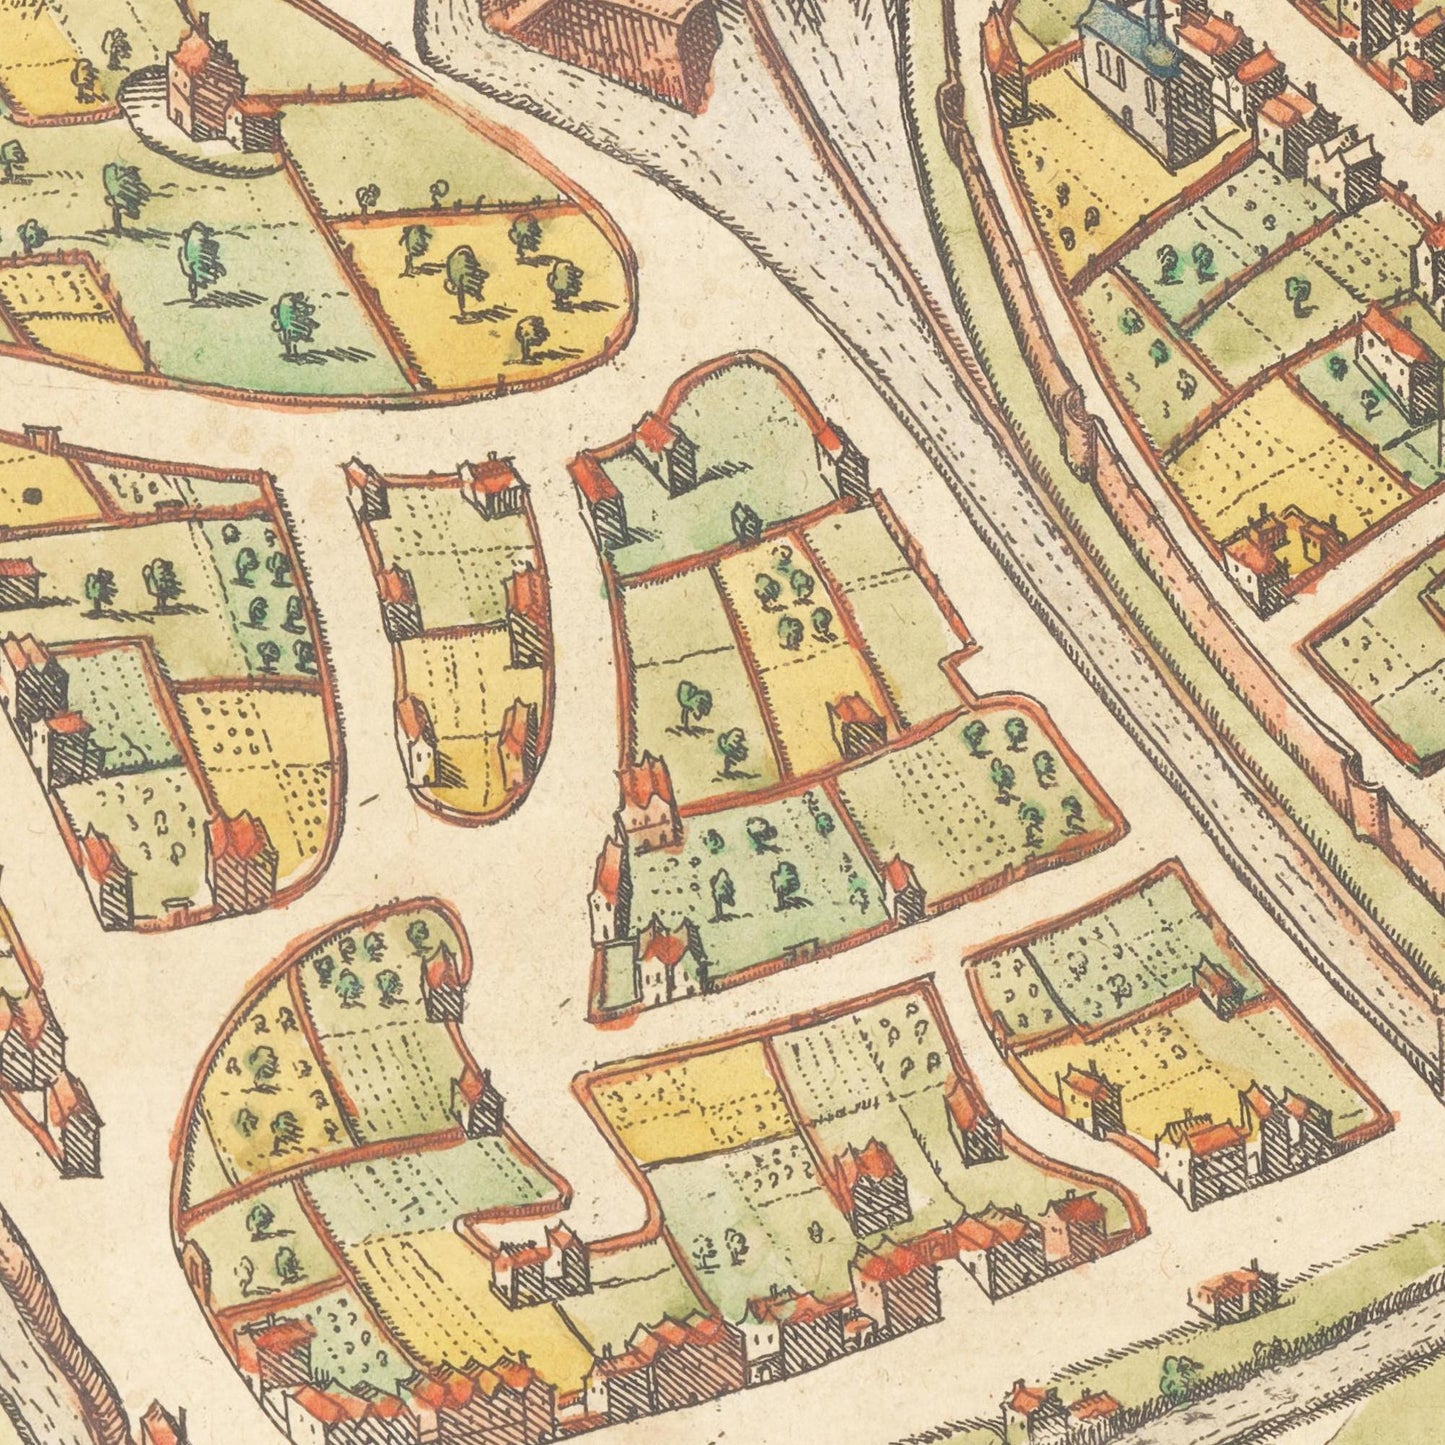 Historischer Stadtplan Wesel um 1592